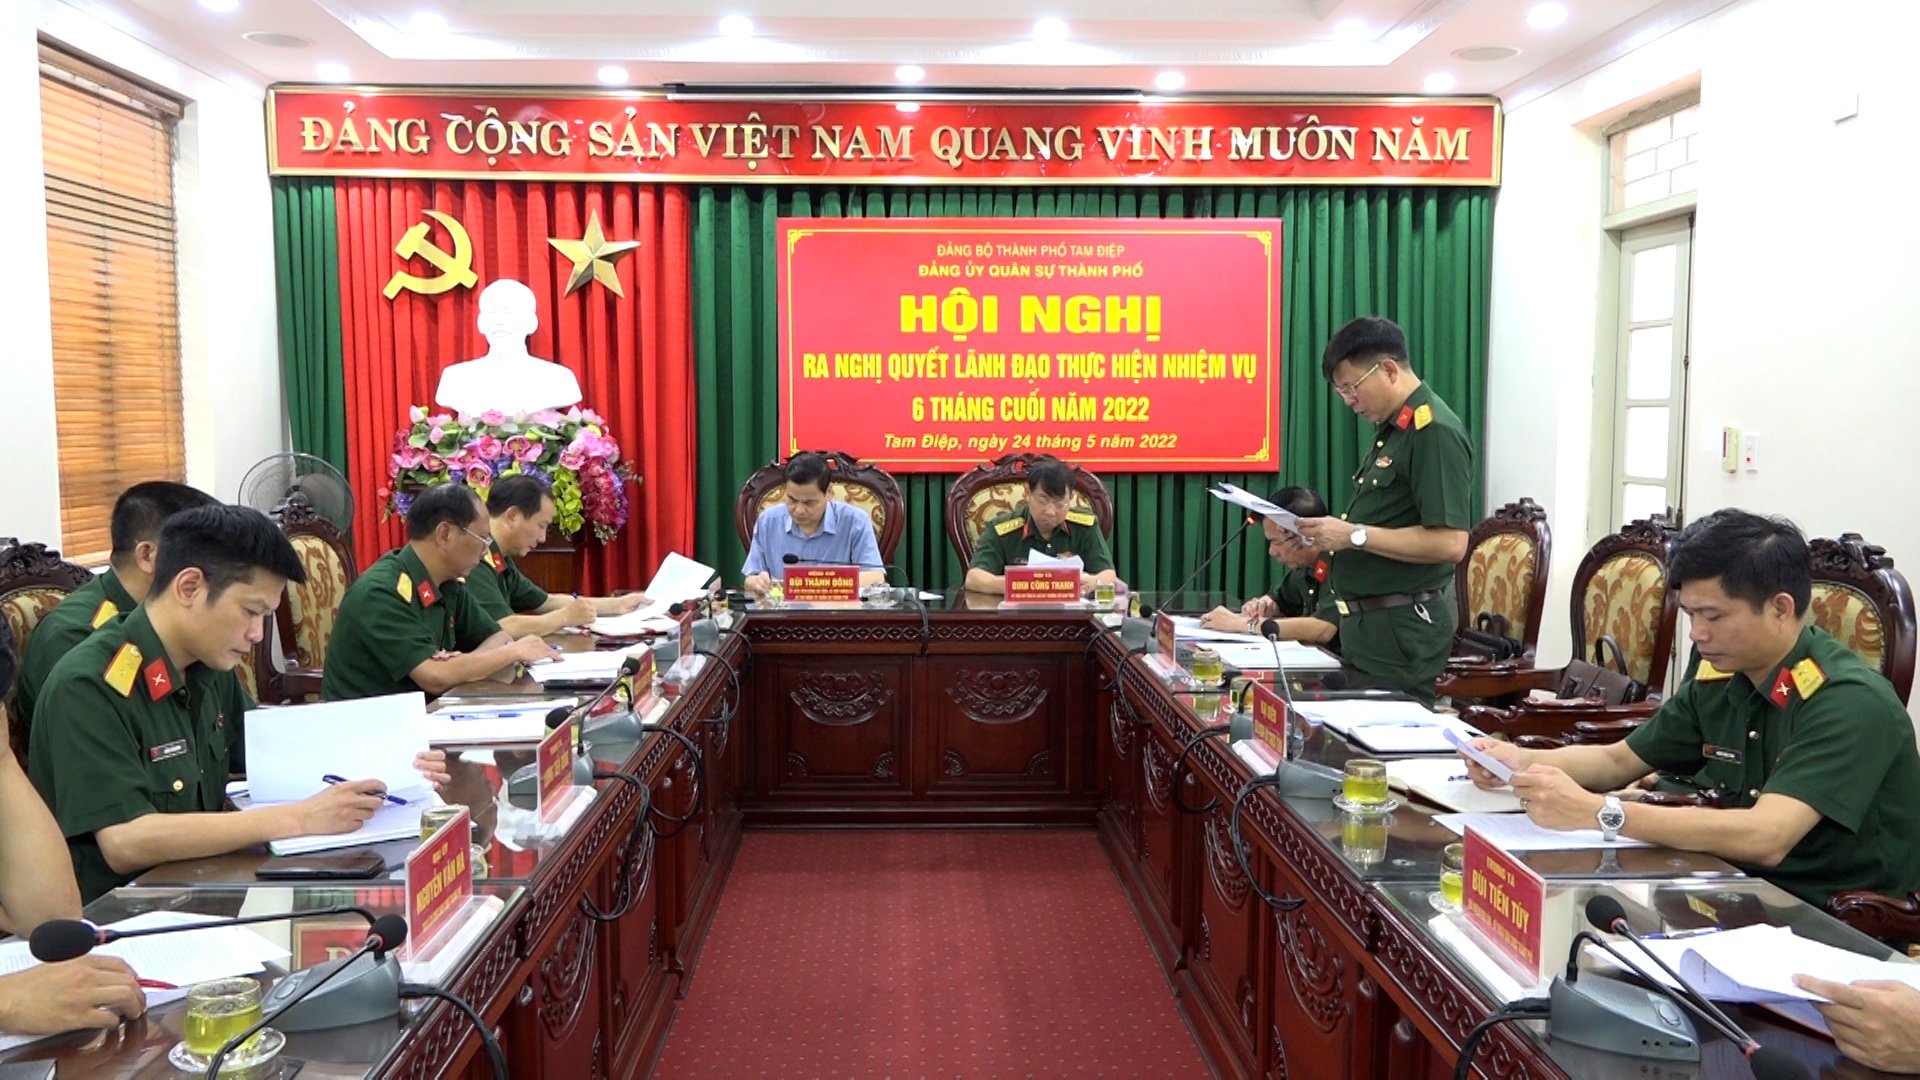 Đảng ủy Quân sự thành phố Tam Điệp tổ chức Hội nghị Nghị quyết lãnh đạo thực hiện nhiệm vụ 6 tháng cuối năm 2022